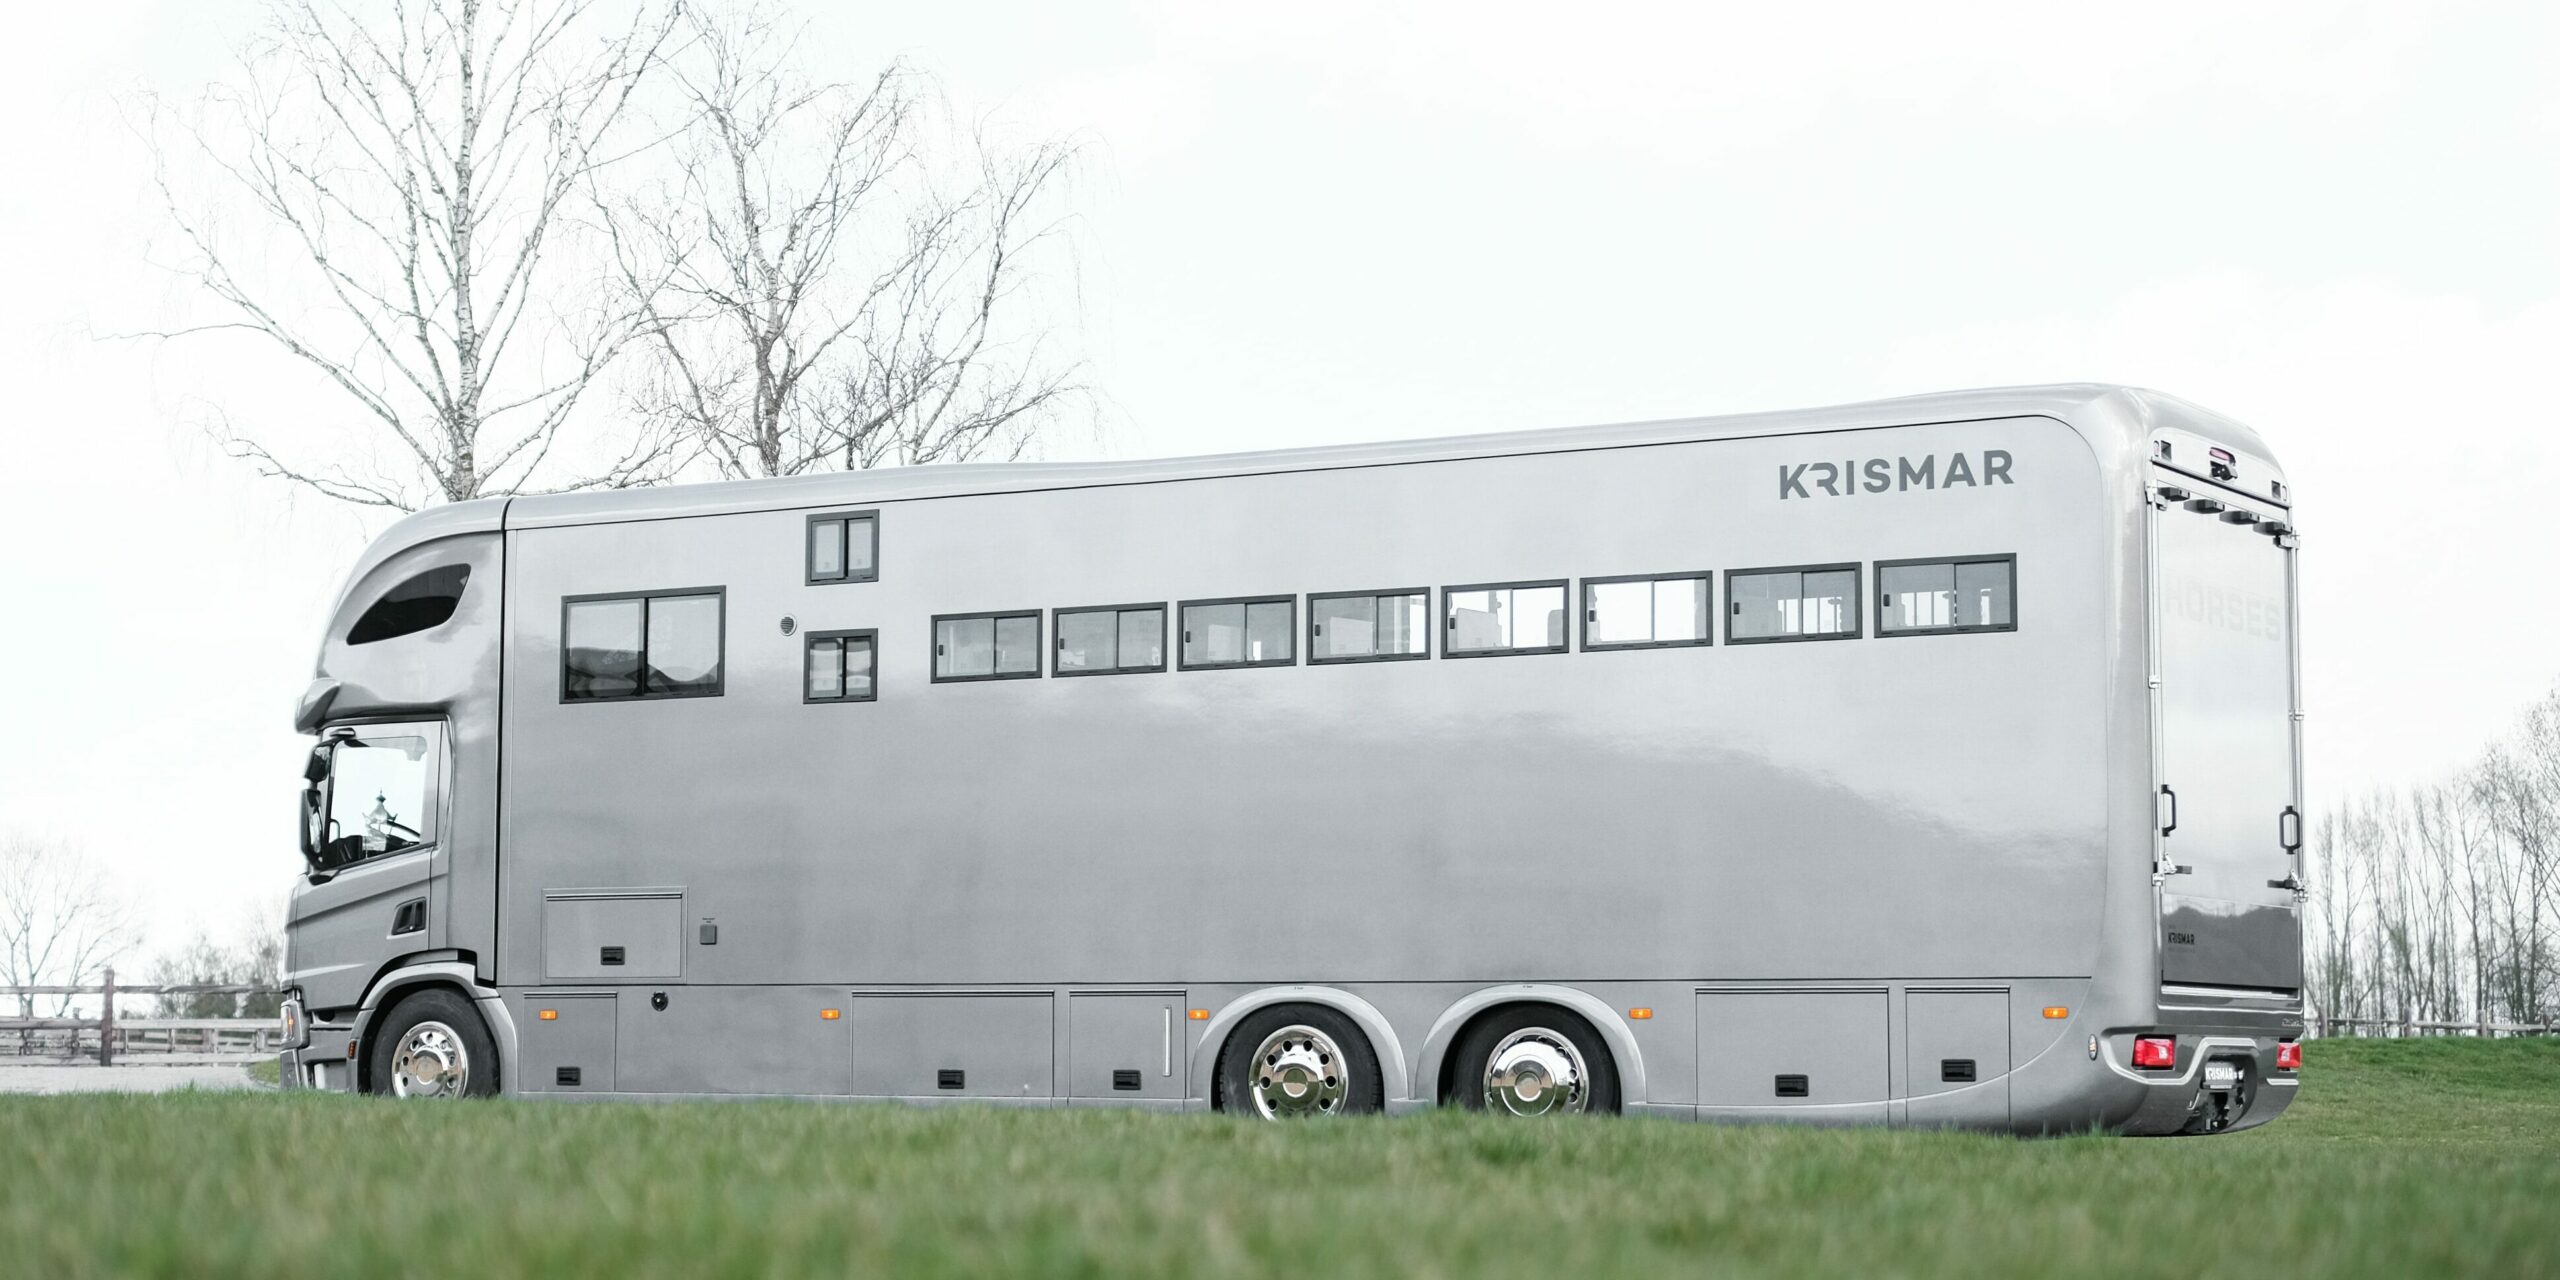 Krismar horsetruck professional paardenvrachtwagen in grijze kleur